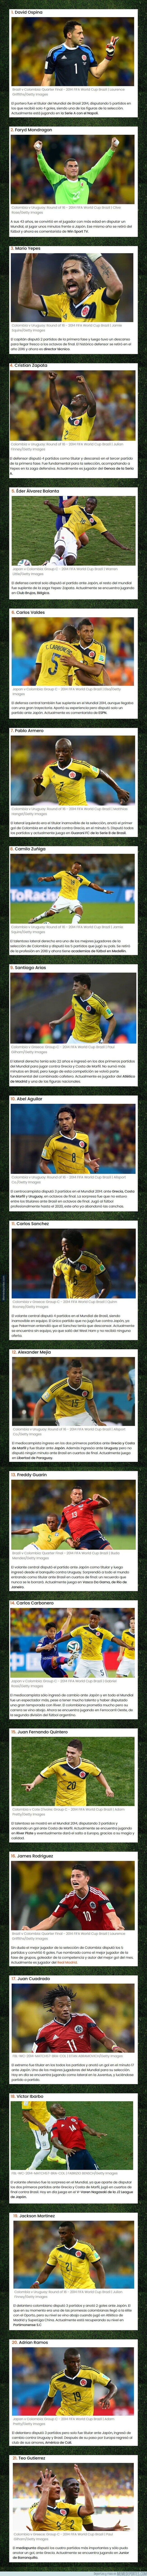 1108298 - ¿Qué es de la vida de los futbolistas colombianos que jugaron el Mundial 2014?